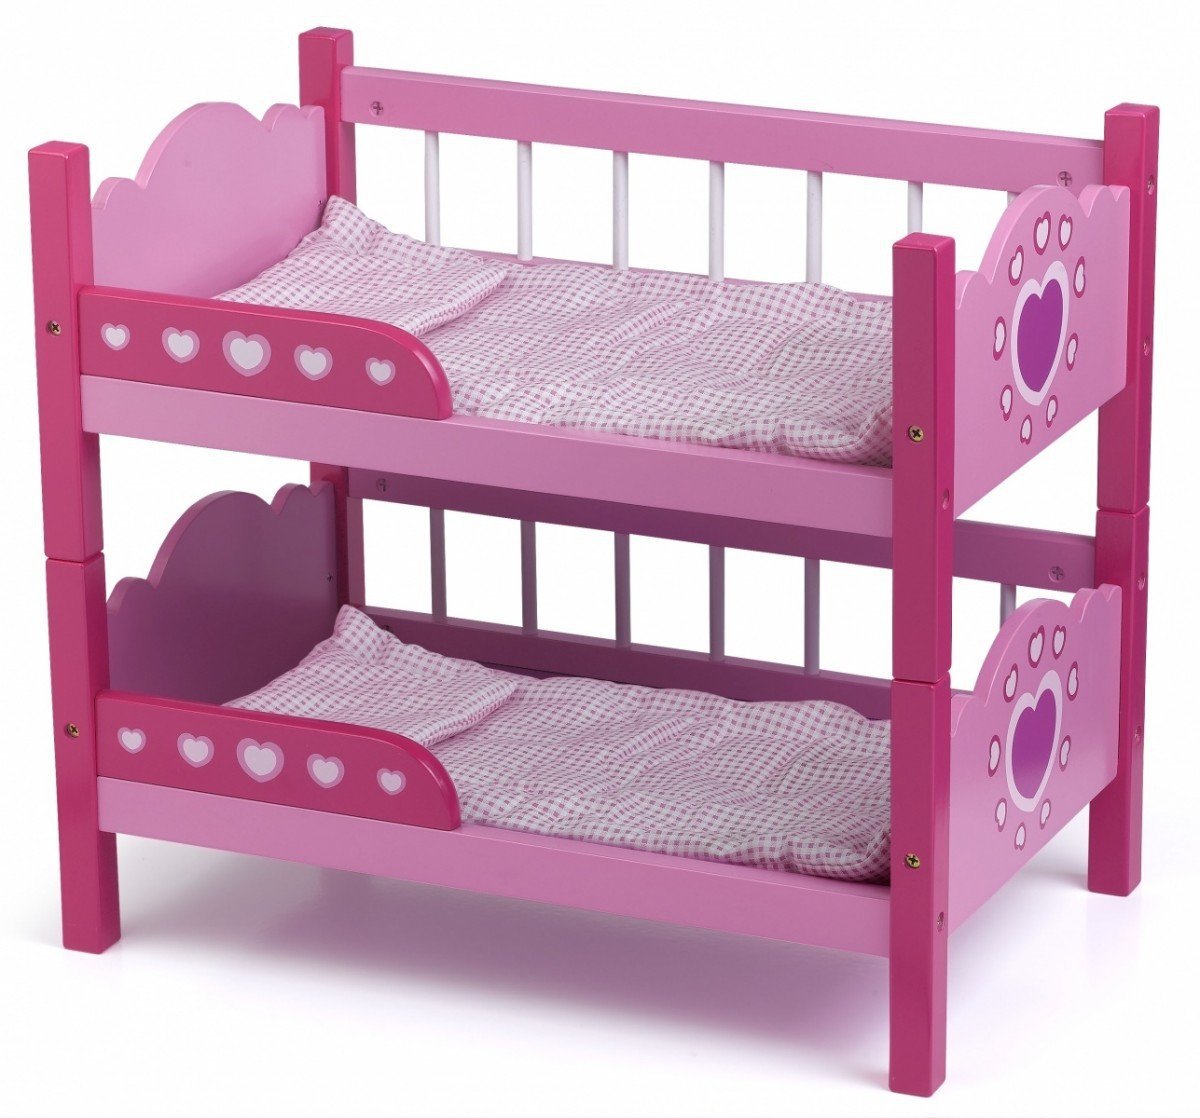 Детская кроватка для кукол. Двухэтажная кровать для кукол. Кроватка двухъярусная для кукол. Кровать для кукол двухъярусная. Игрушечные кроватки для кукол.